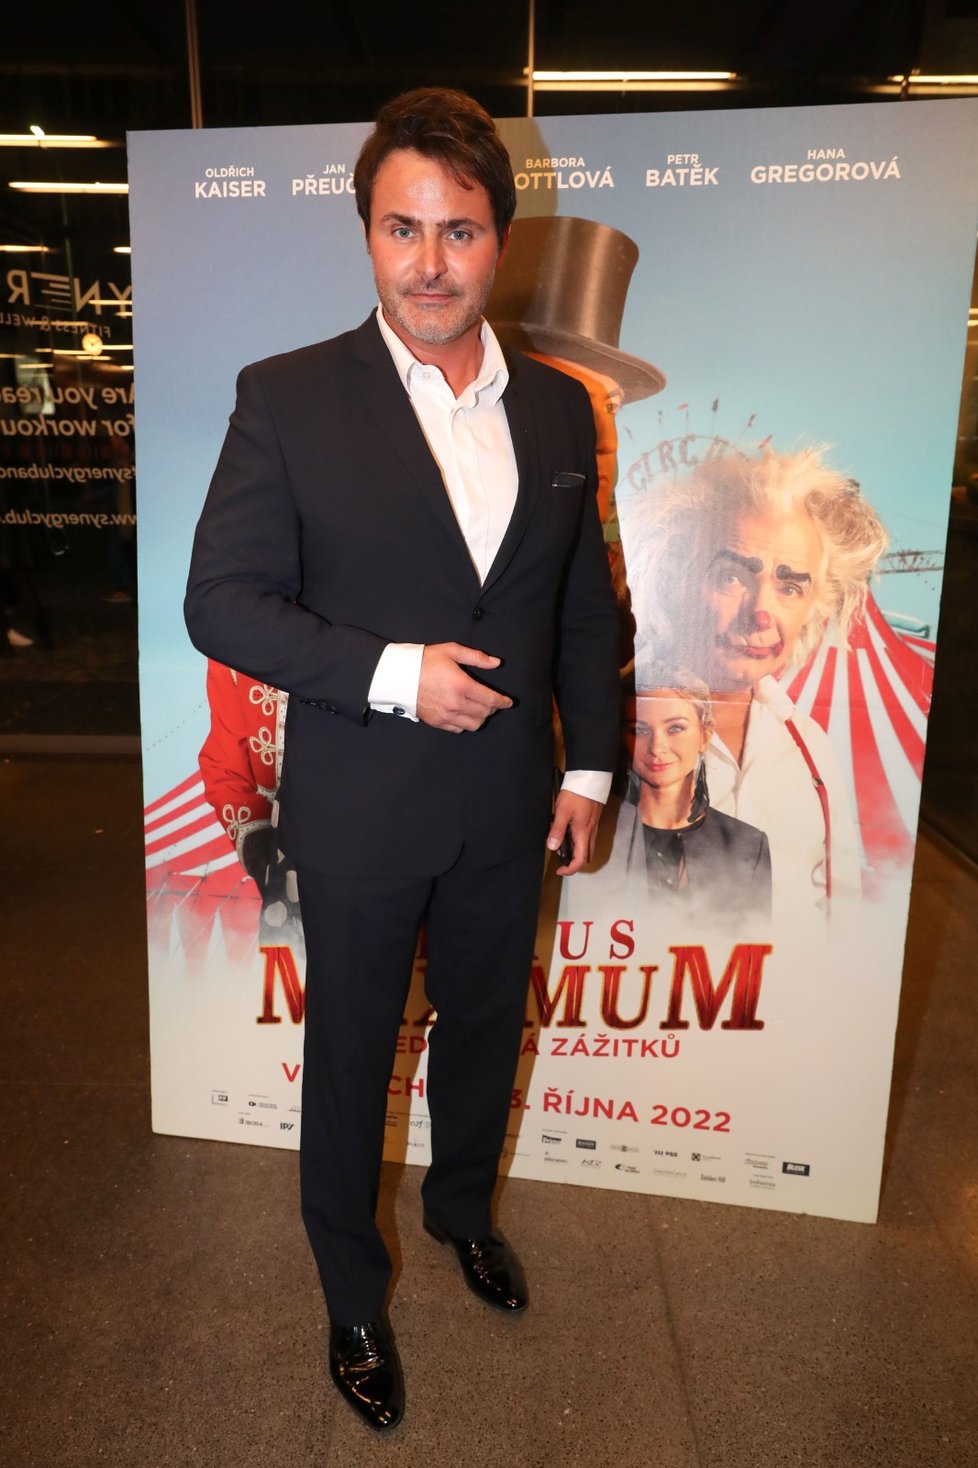 Premiéra filmu Cirkus Maximum přitáhla do kin mnoho hvězd - Miroslav Šimůnek.